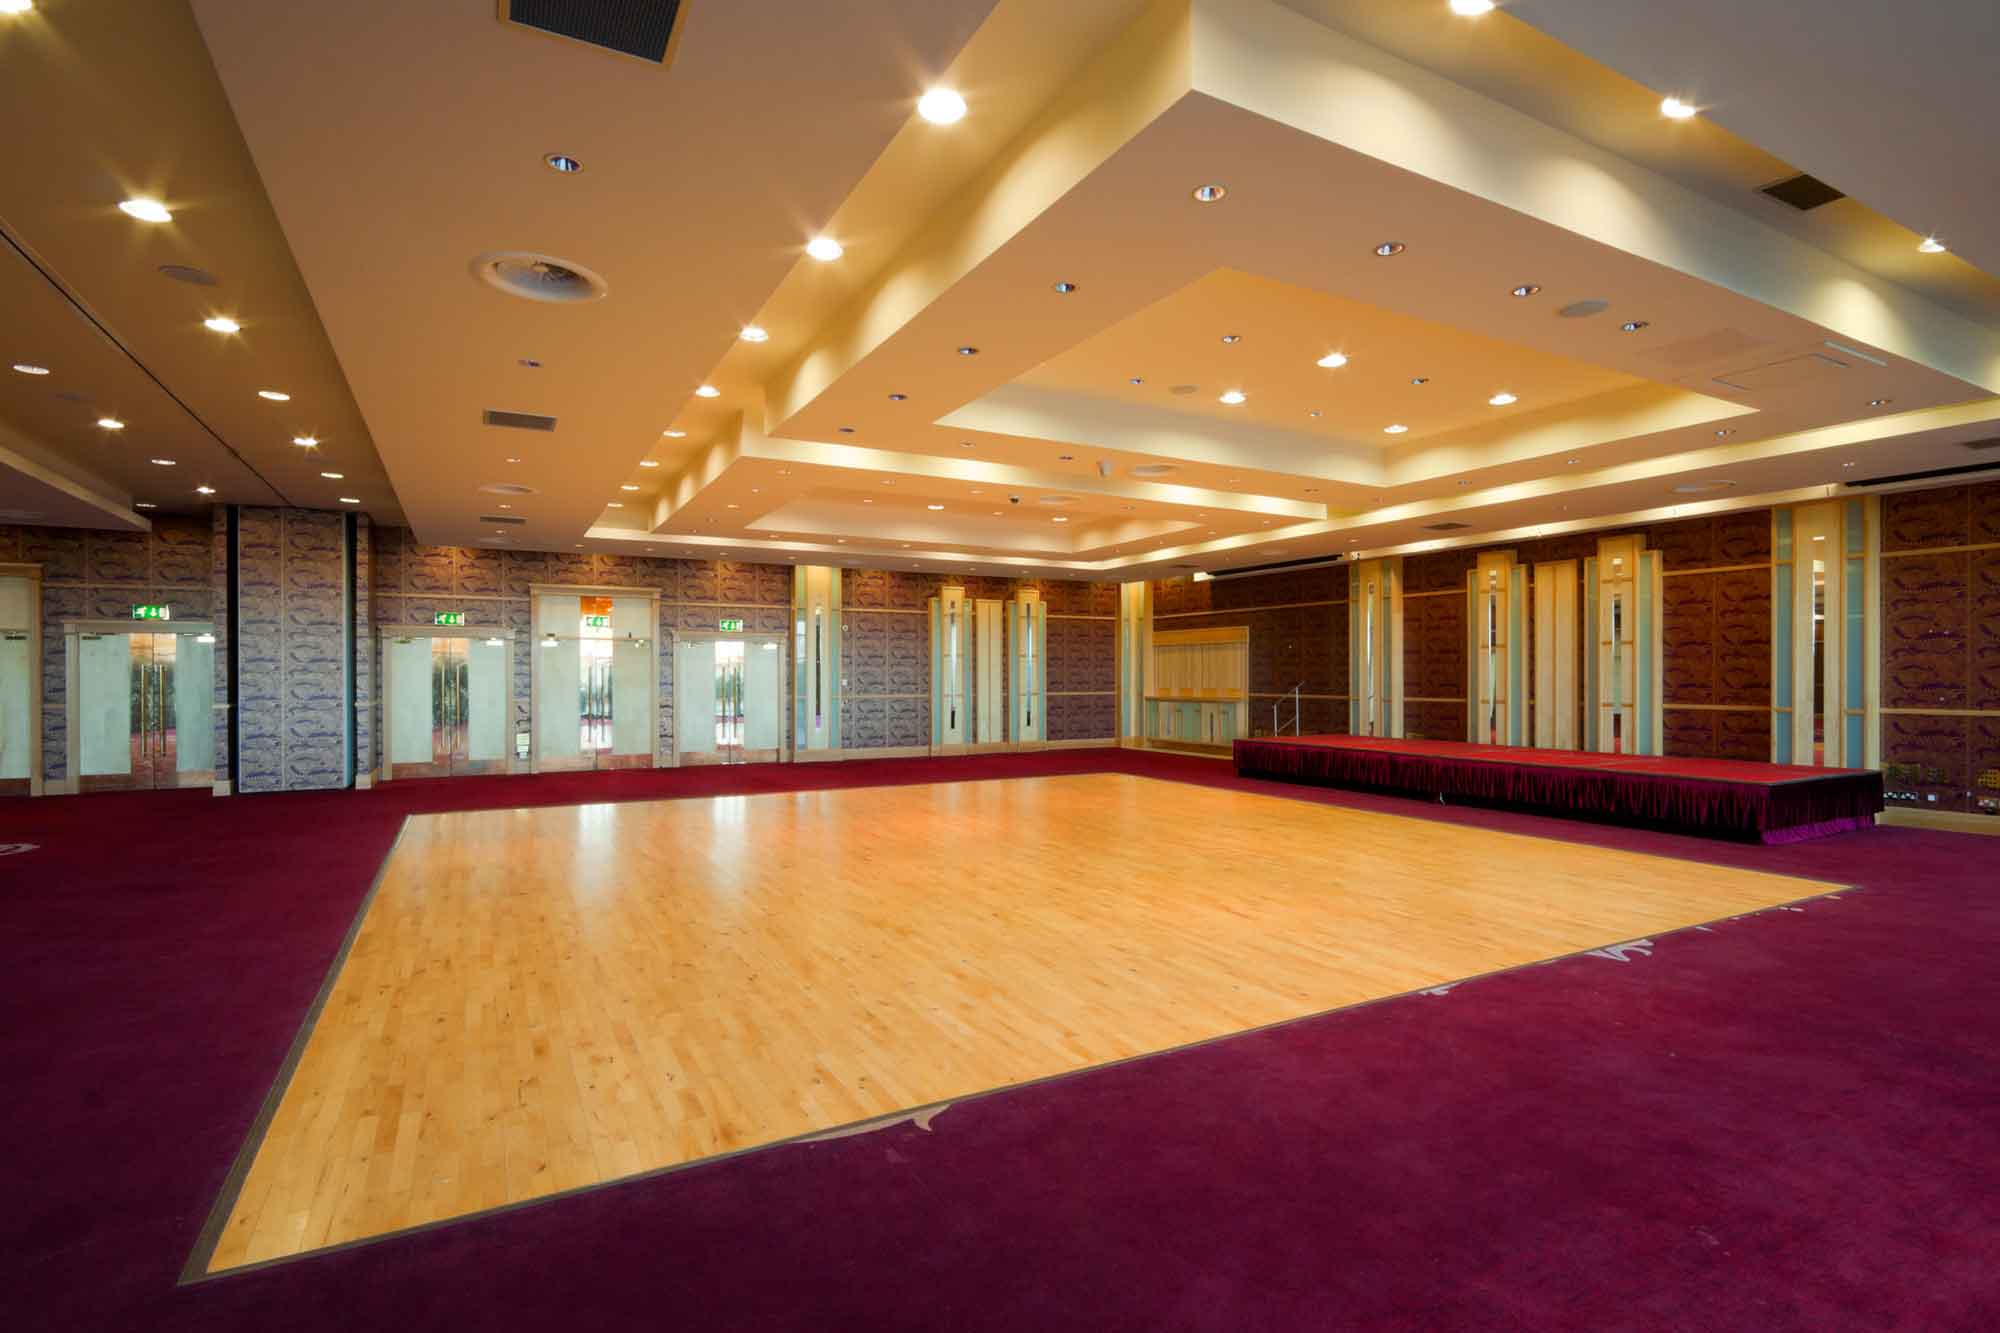 Dance floor in banquet hall